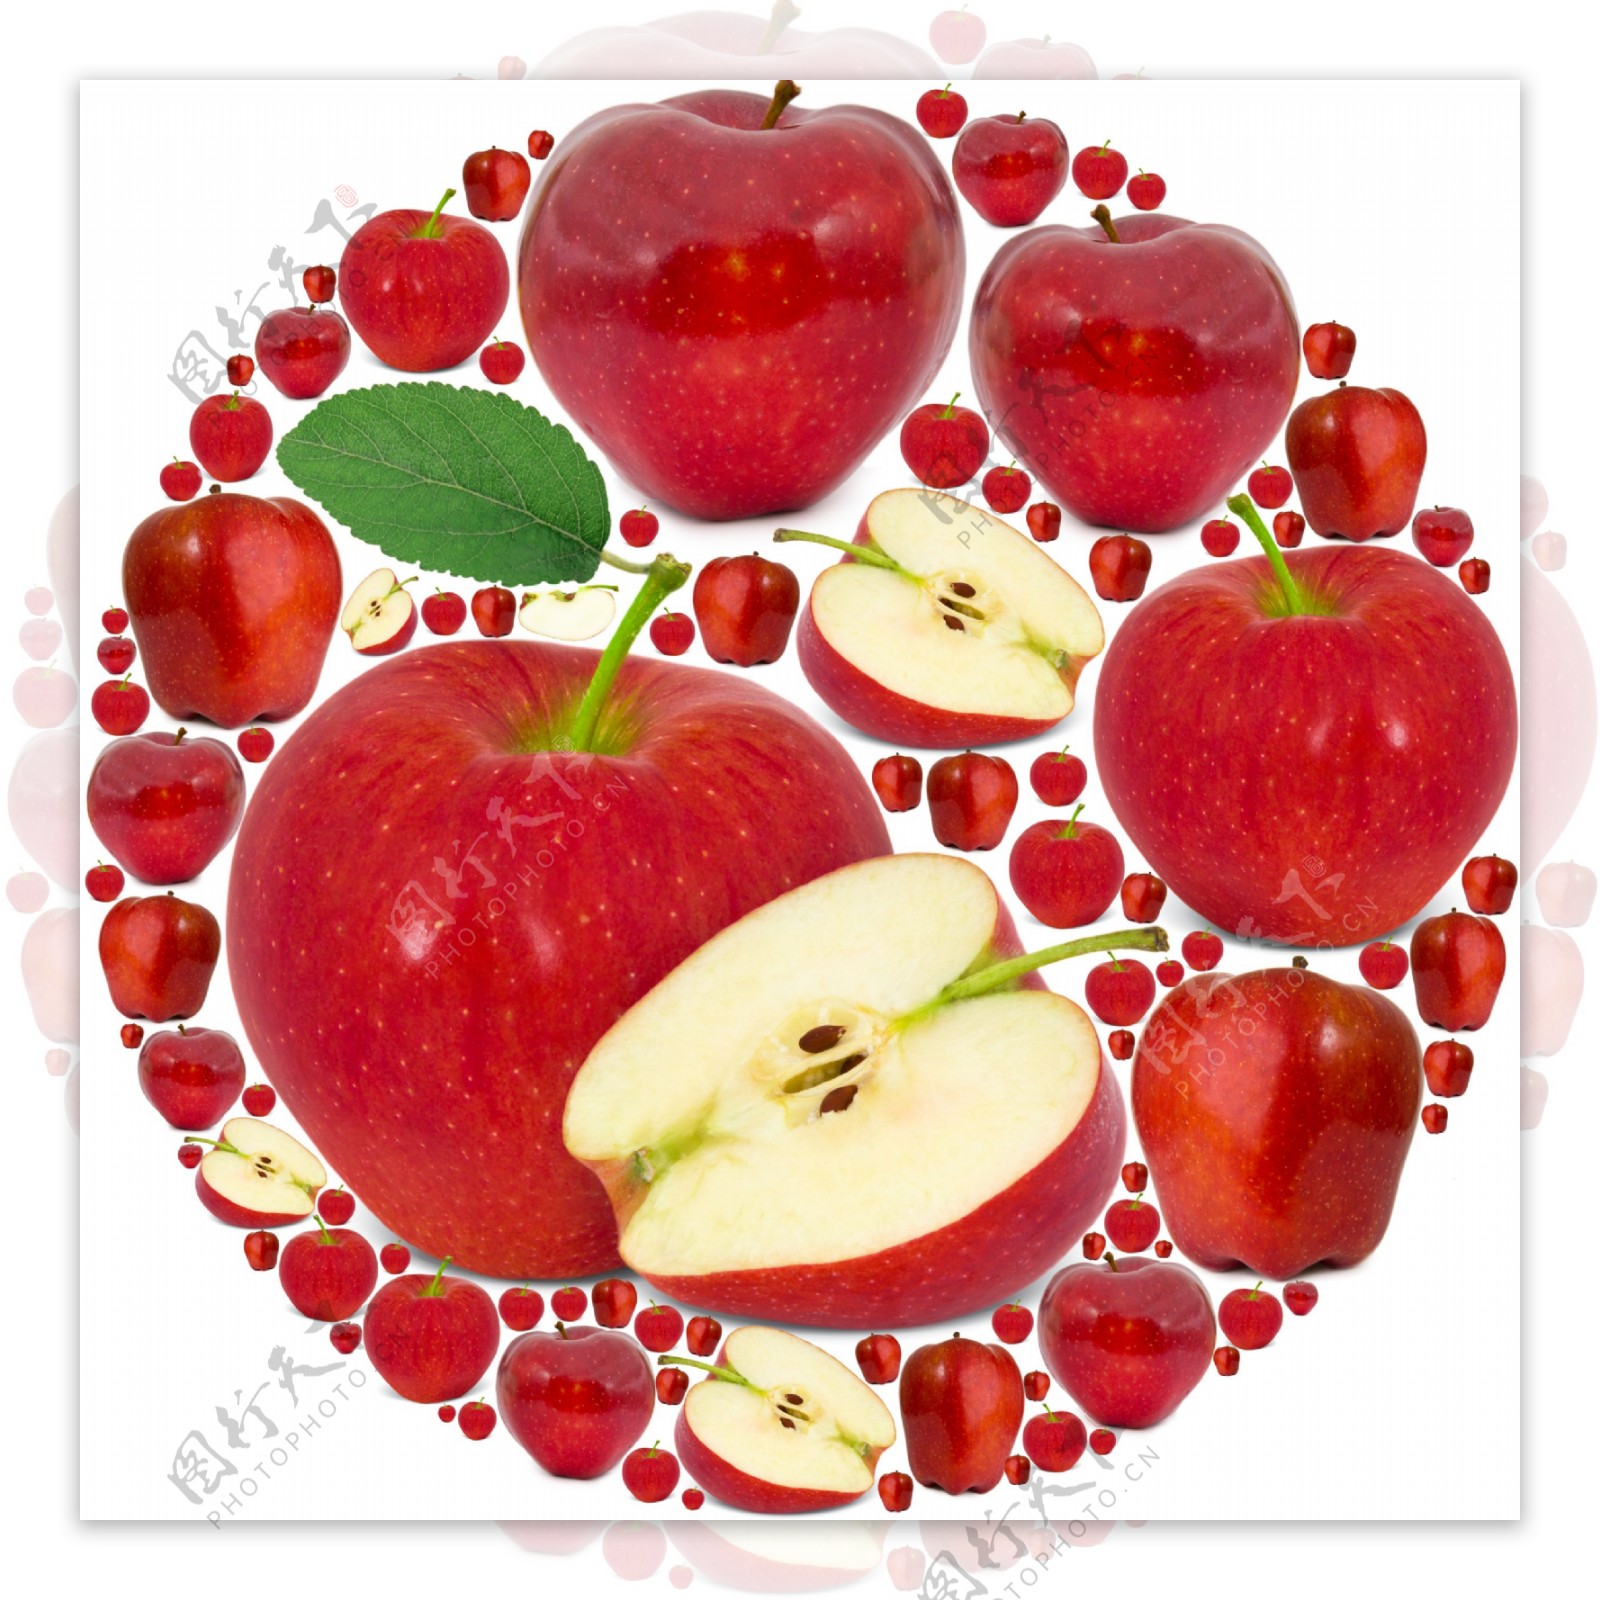 红色苹果组成的圆形图案图片